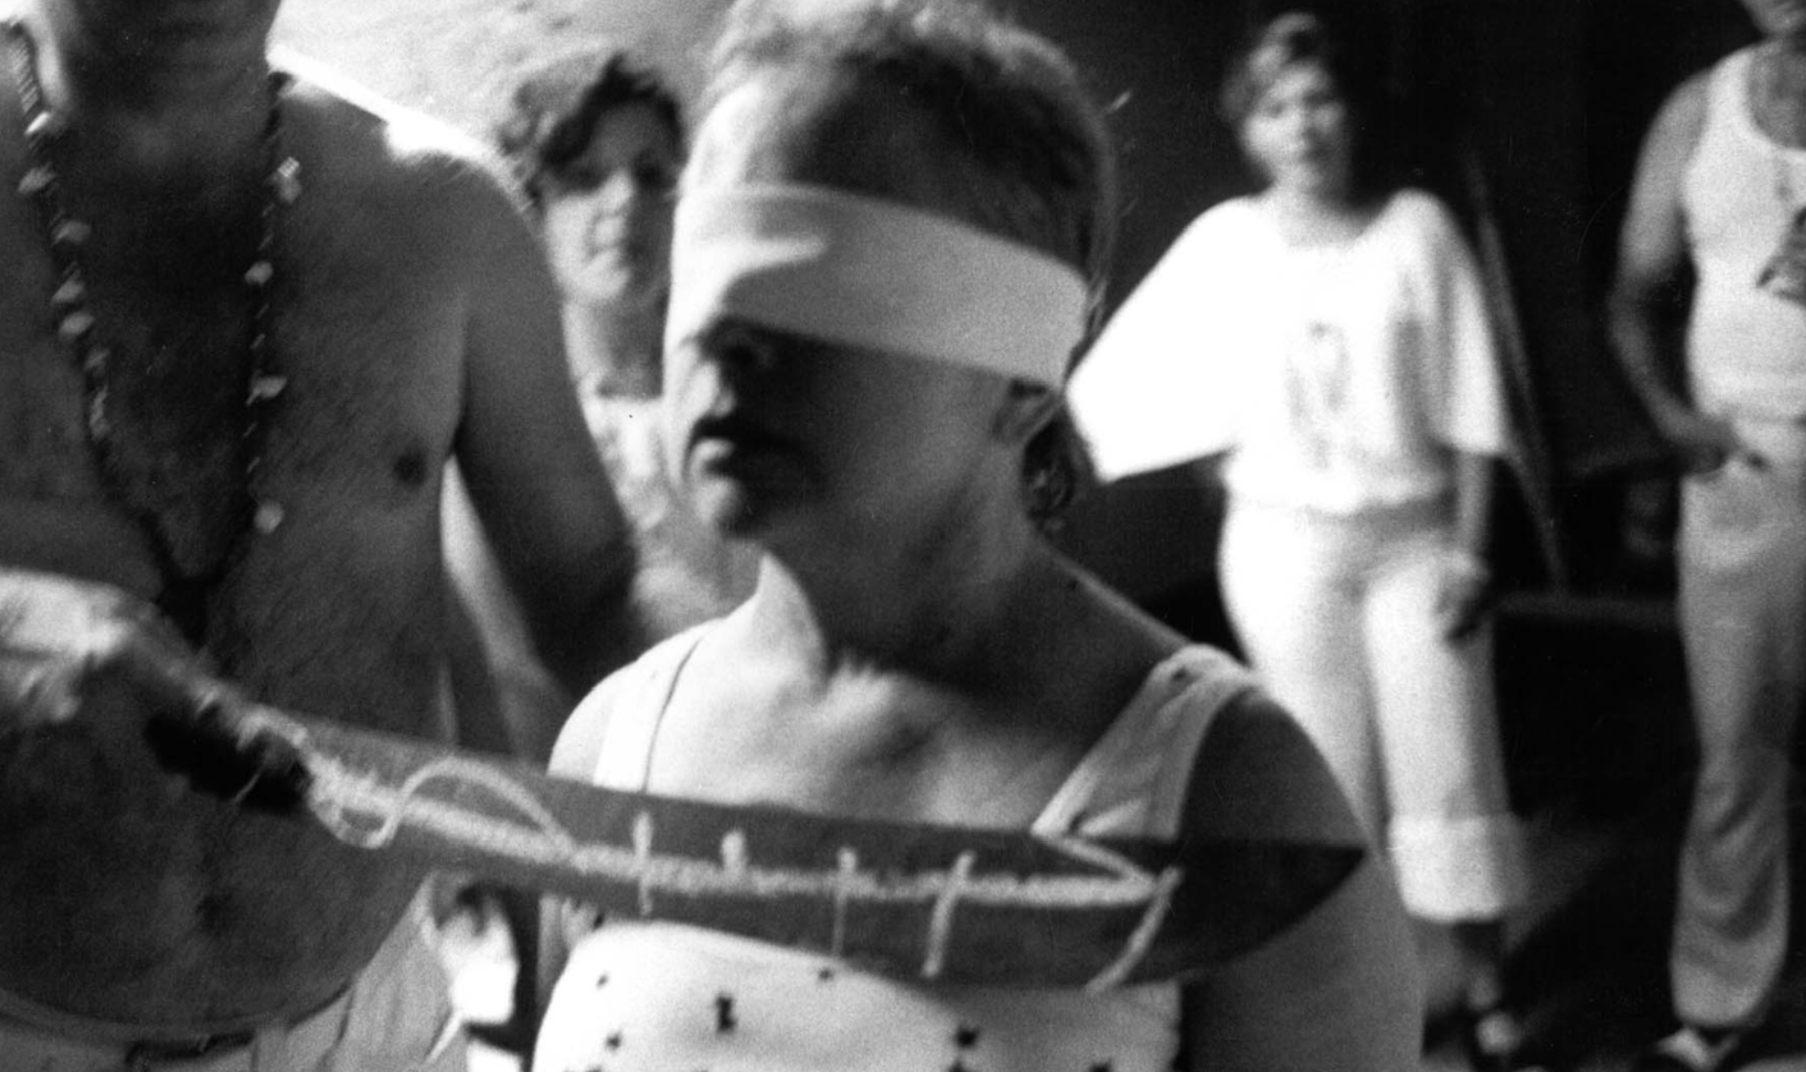 Ритуал посвящения в&nbsp;пало монте. США, Флорида, 1978&nbsp;г.&nbsp;Фото Л. Мау. Источник: http://www.deutschefotothek.de